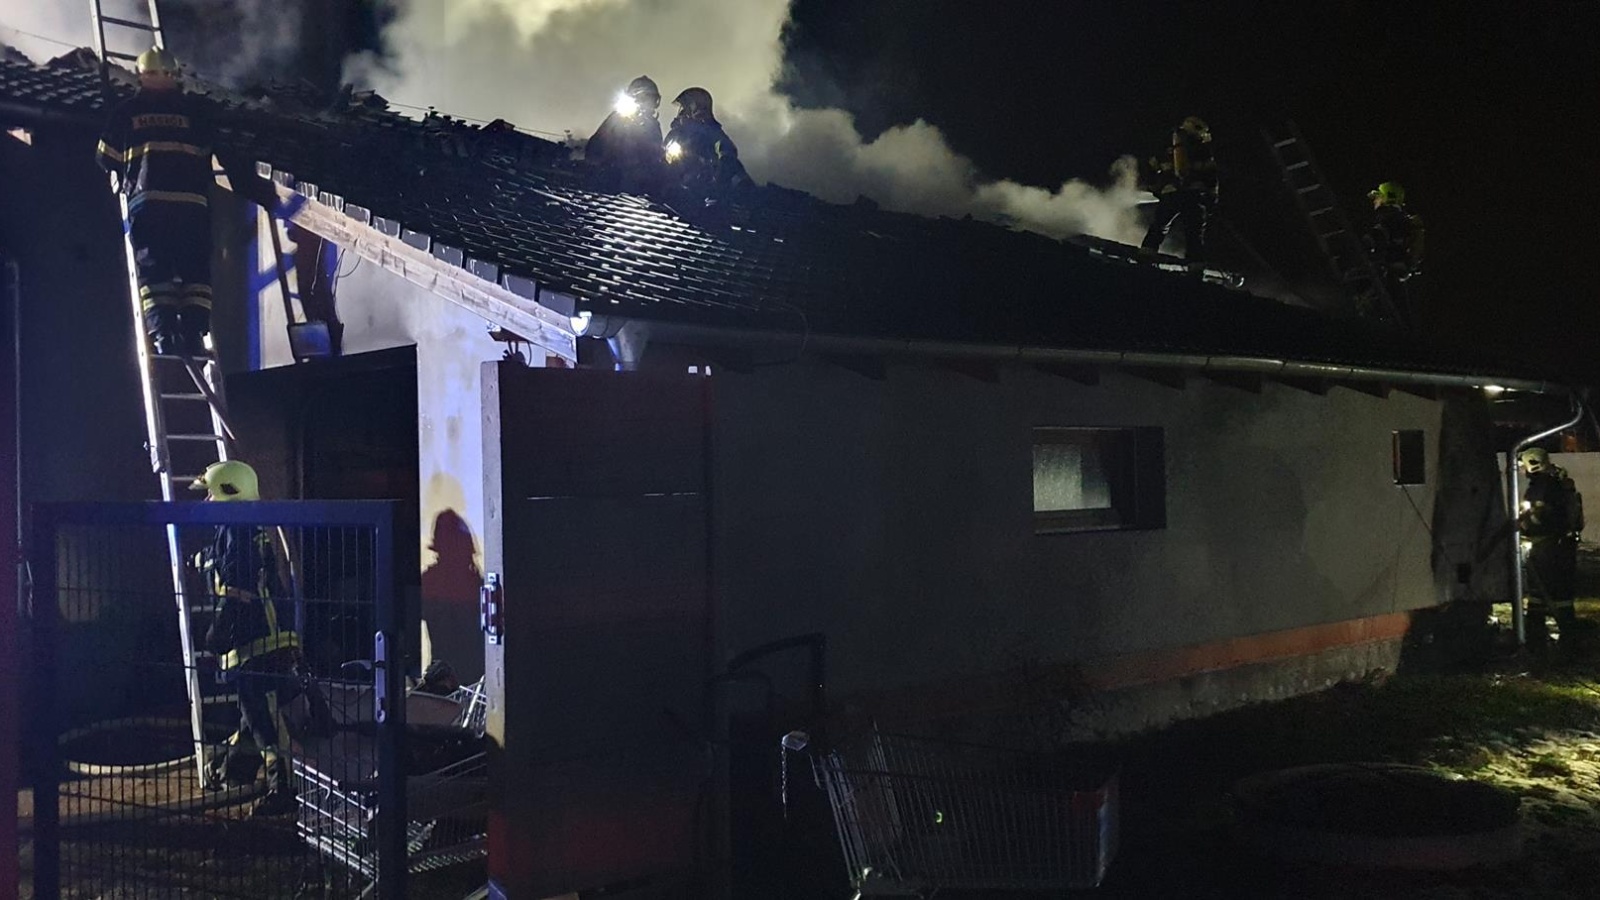 140124-Požár rodinného domu v obci Štíhlice v okrese Praha-východ likvidovaný ve druhém poplachovém stupni.jpg